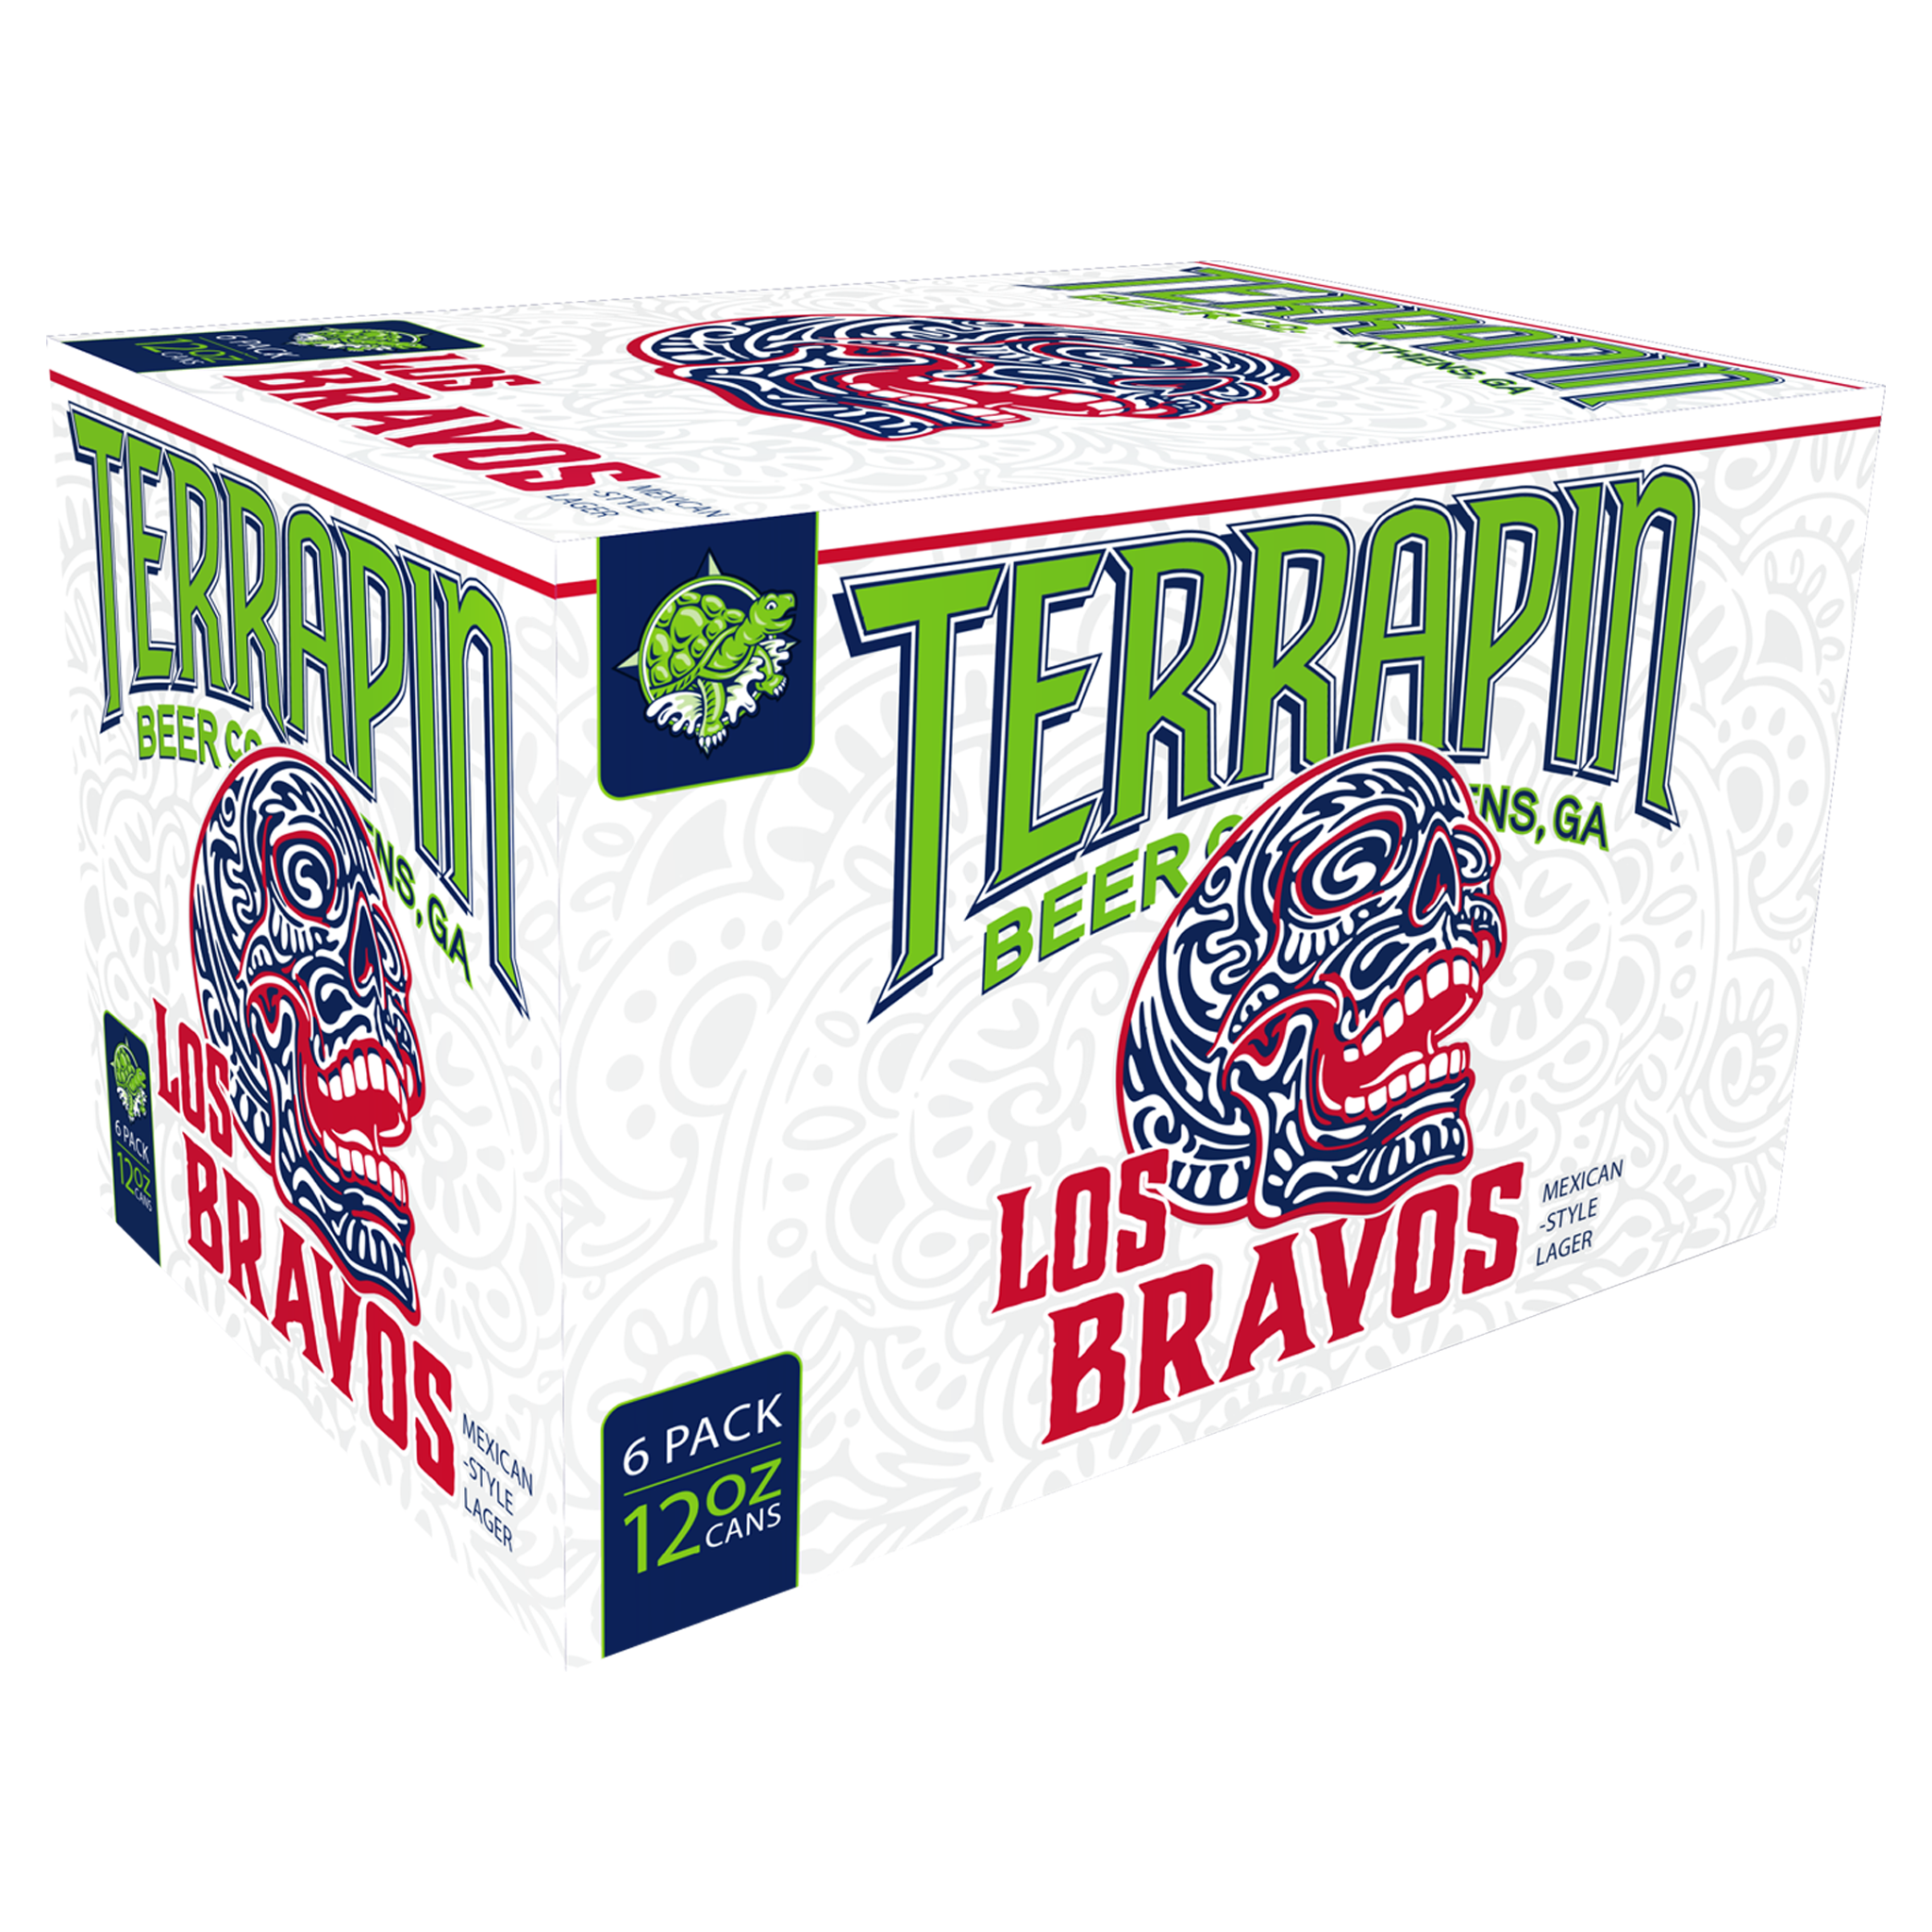 Los Bravos 5.1% - Terrapin Beer Company - Pint Please